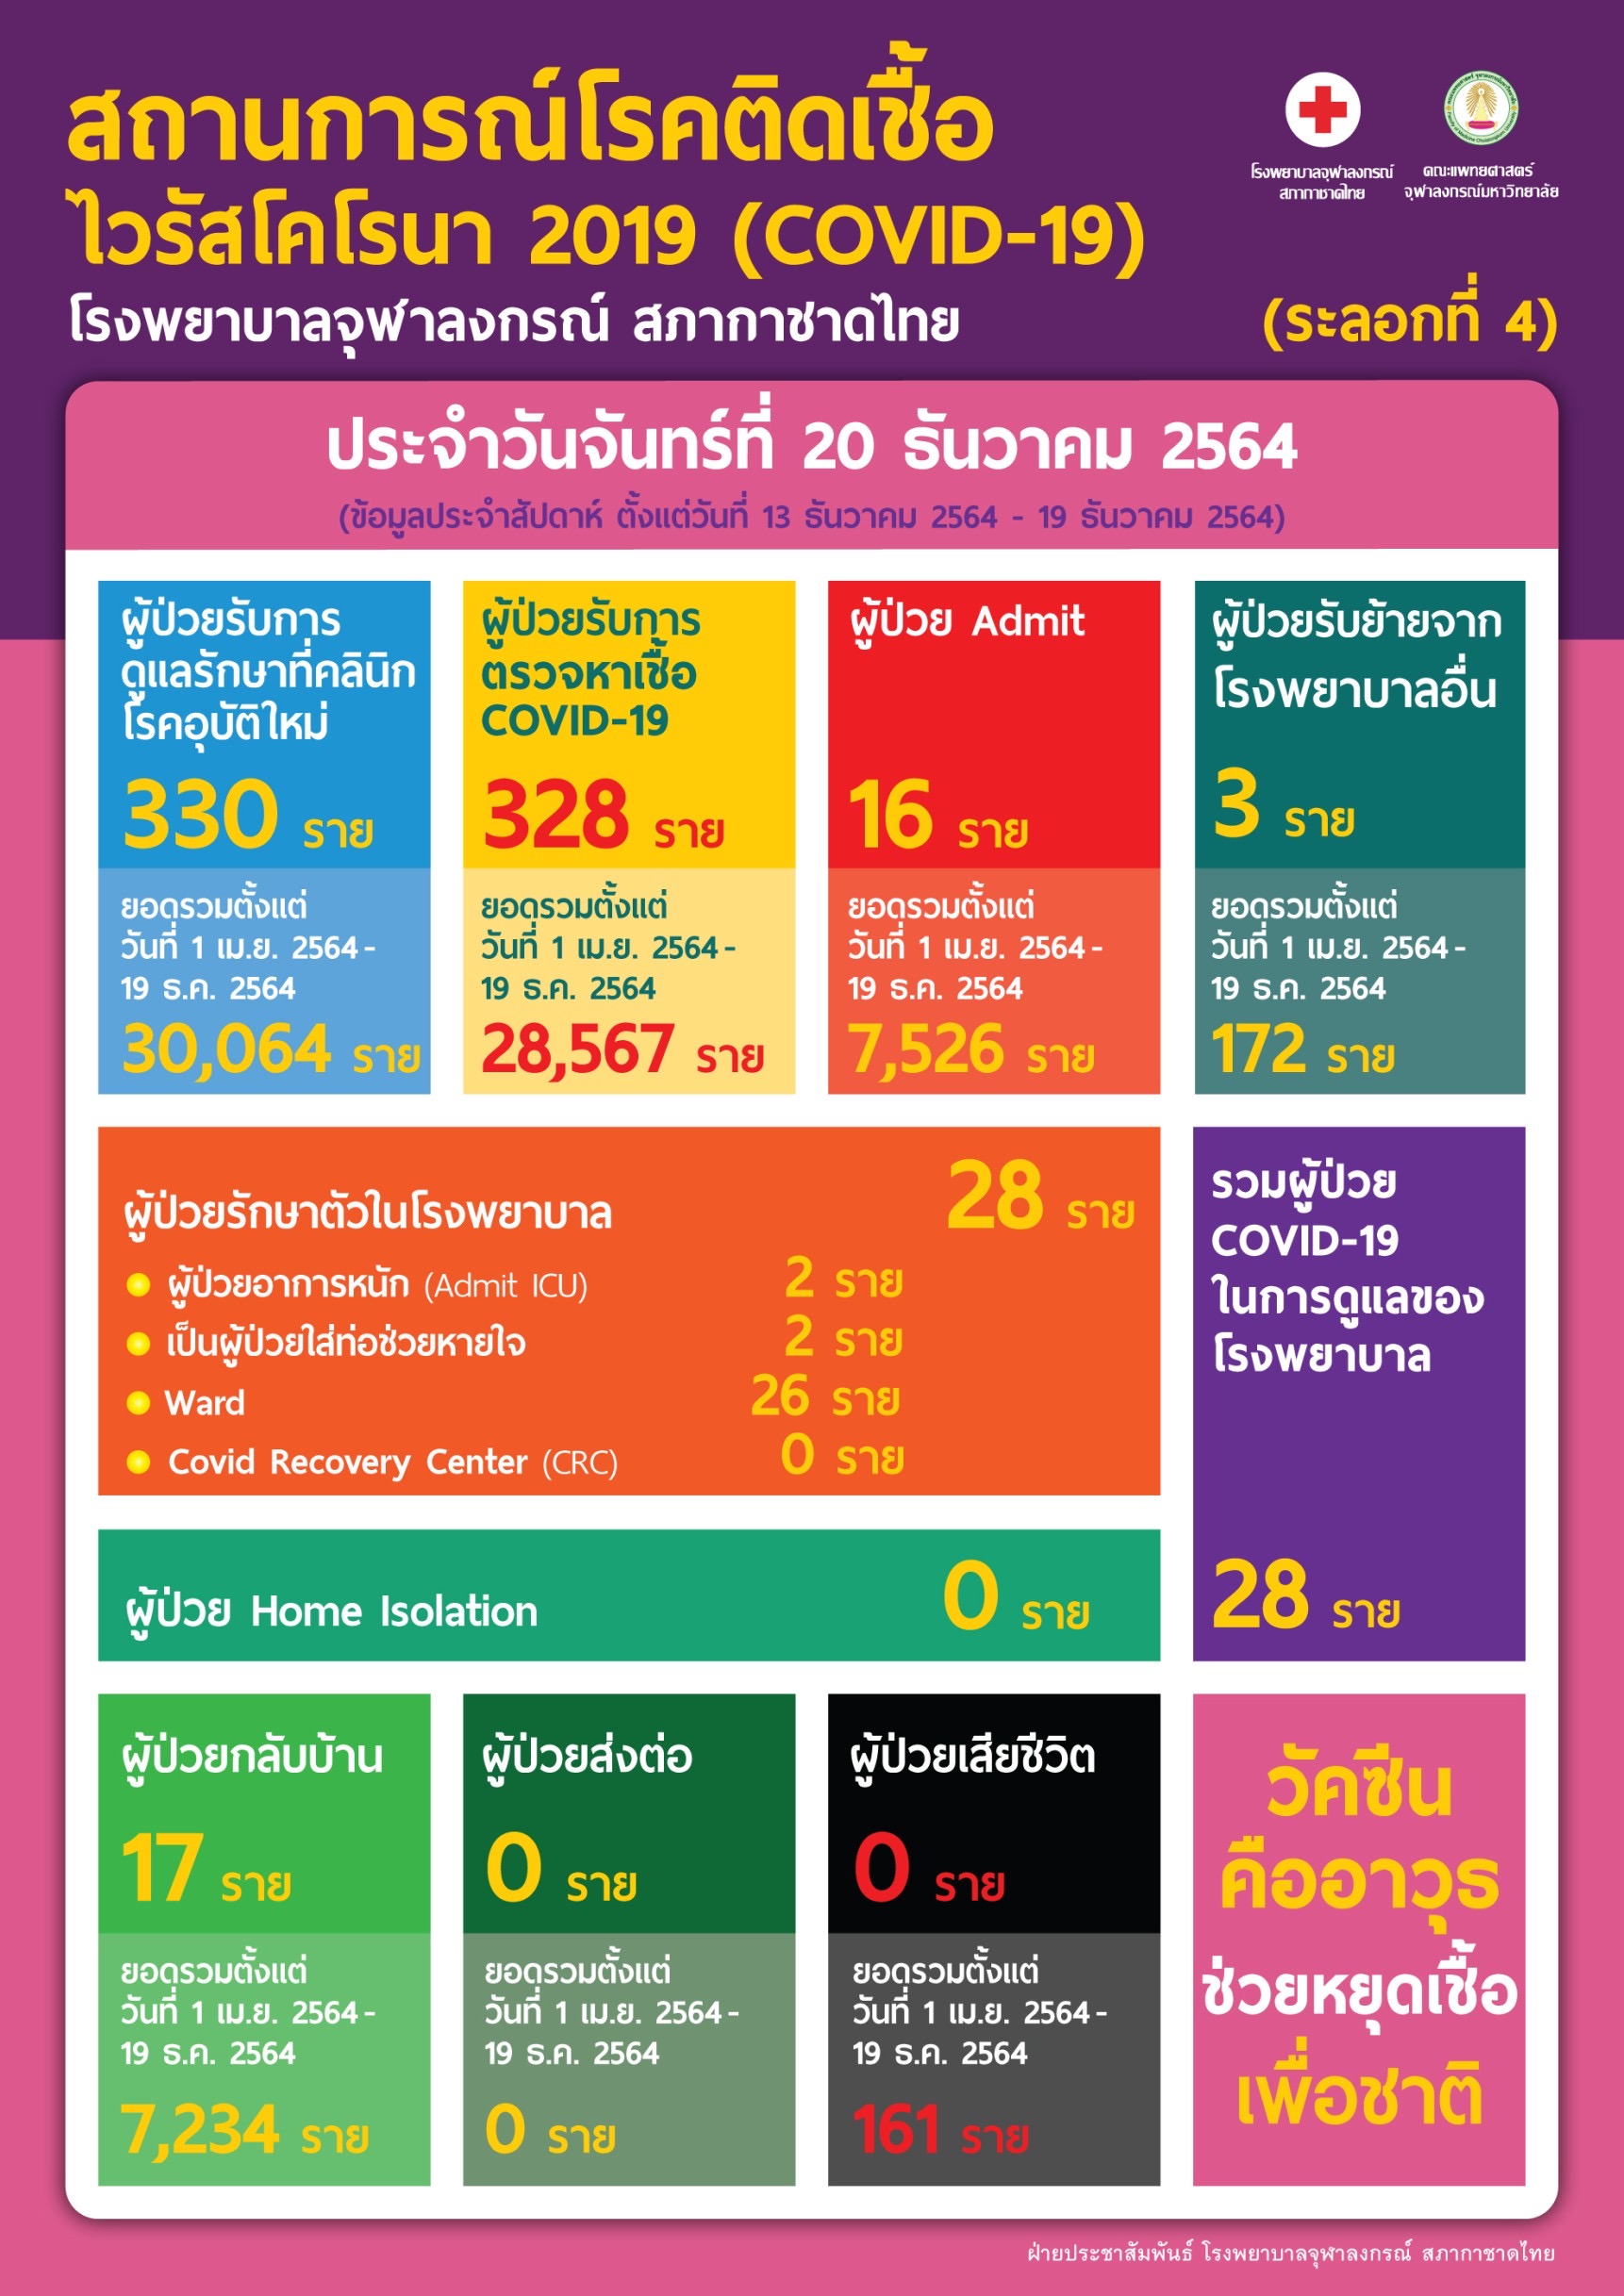 สถานการณ์โรคติดเชื้อไวรัสโคโรนา 2019 (COVID-19) (ระลอกที่ 4) โรงพยาบาลจุฬาลงกรณ์ สภากาชาดไทย ประจำวันจันทร์ที่ 20 ธันวาคม 2564